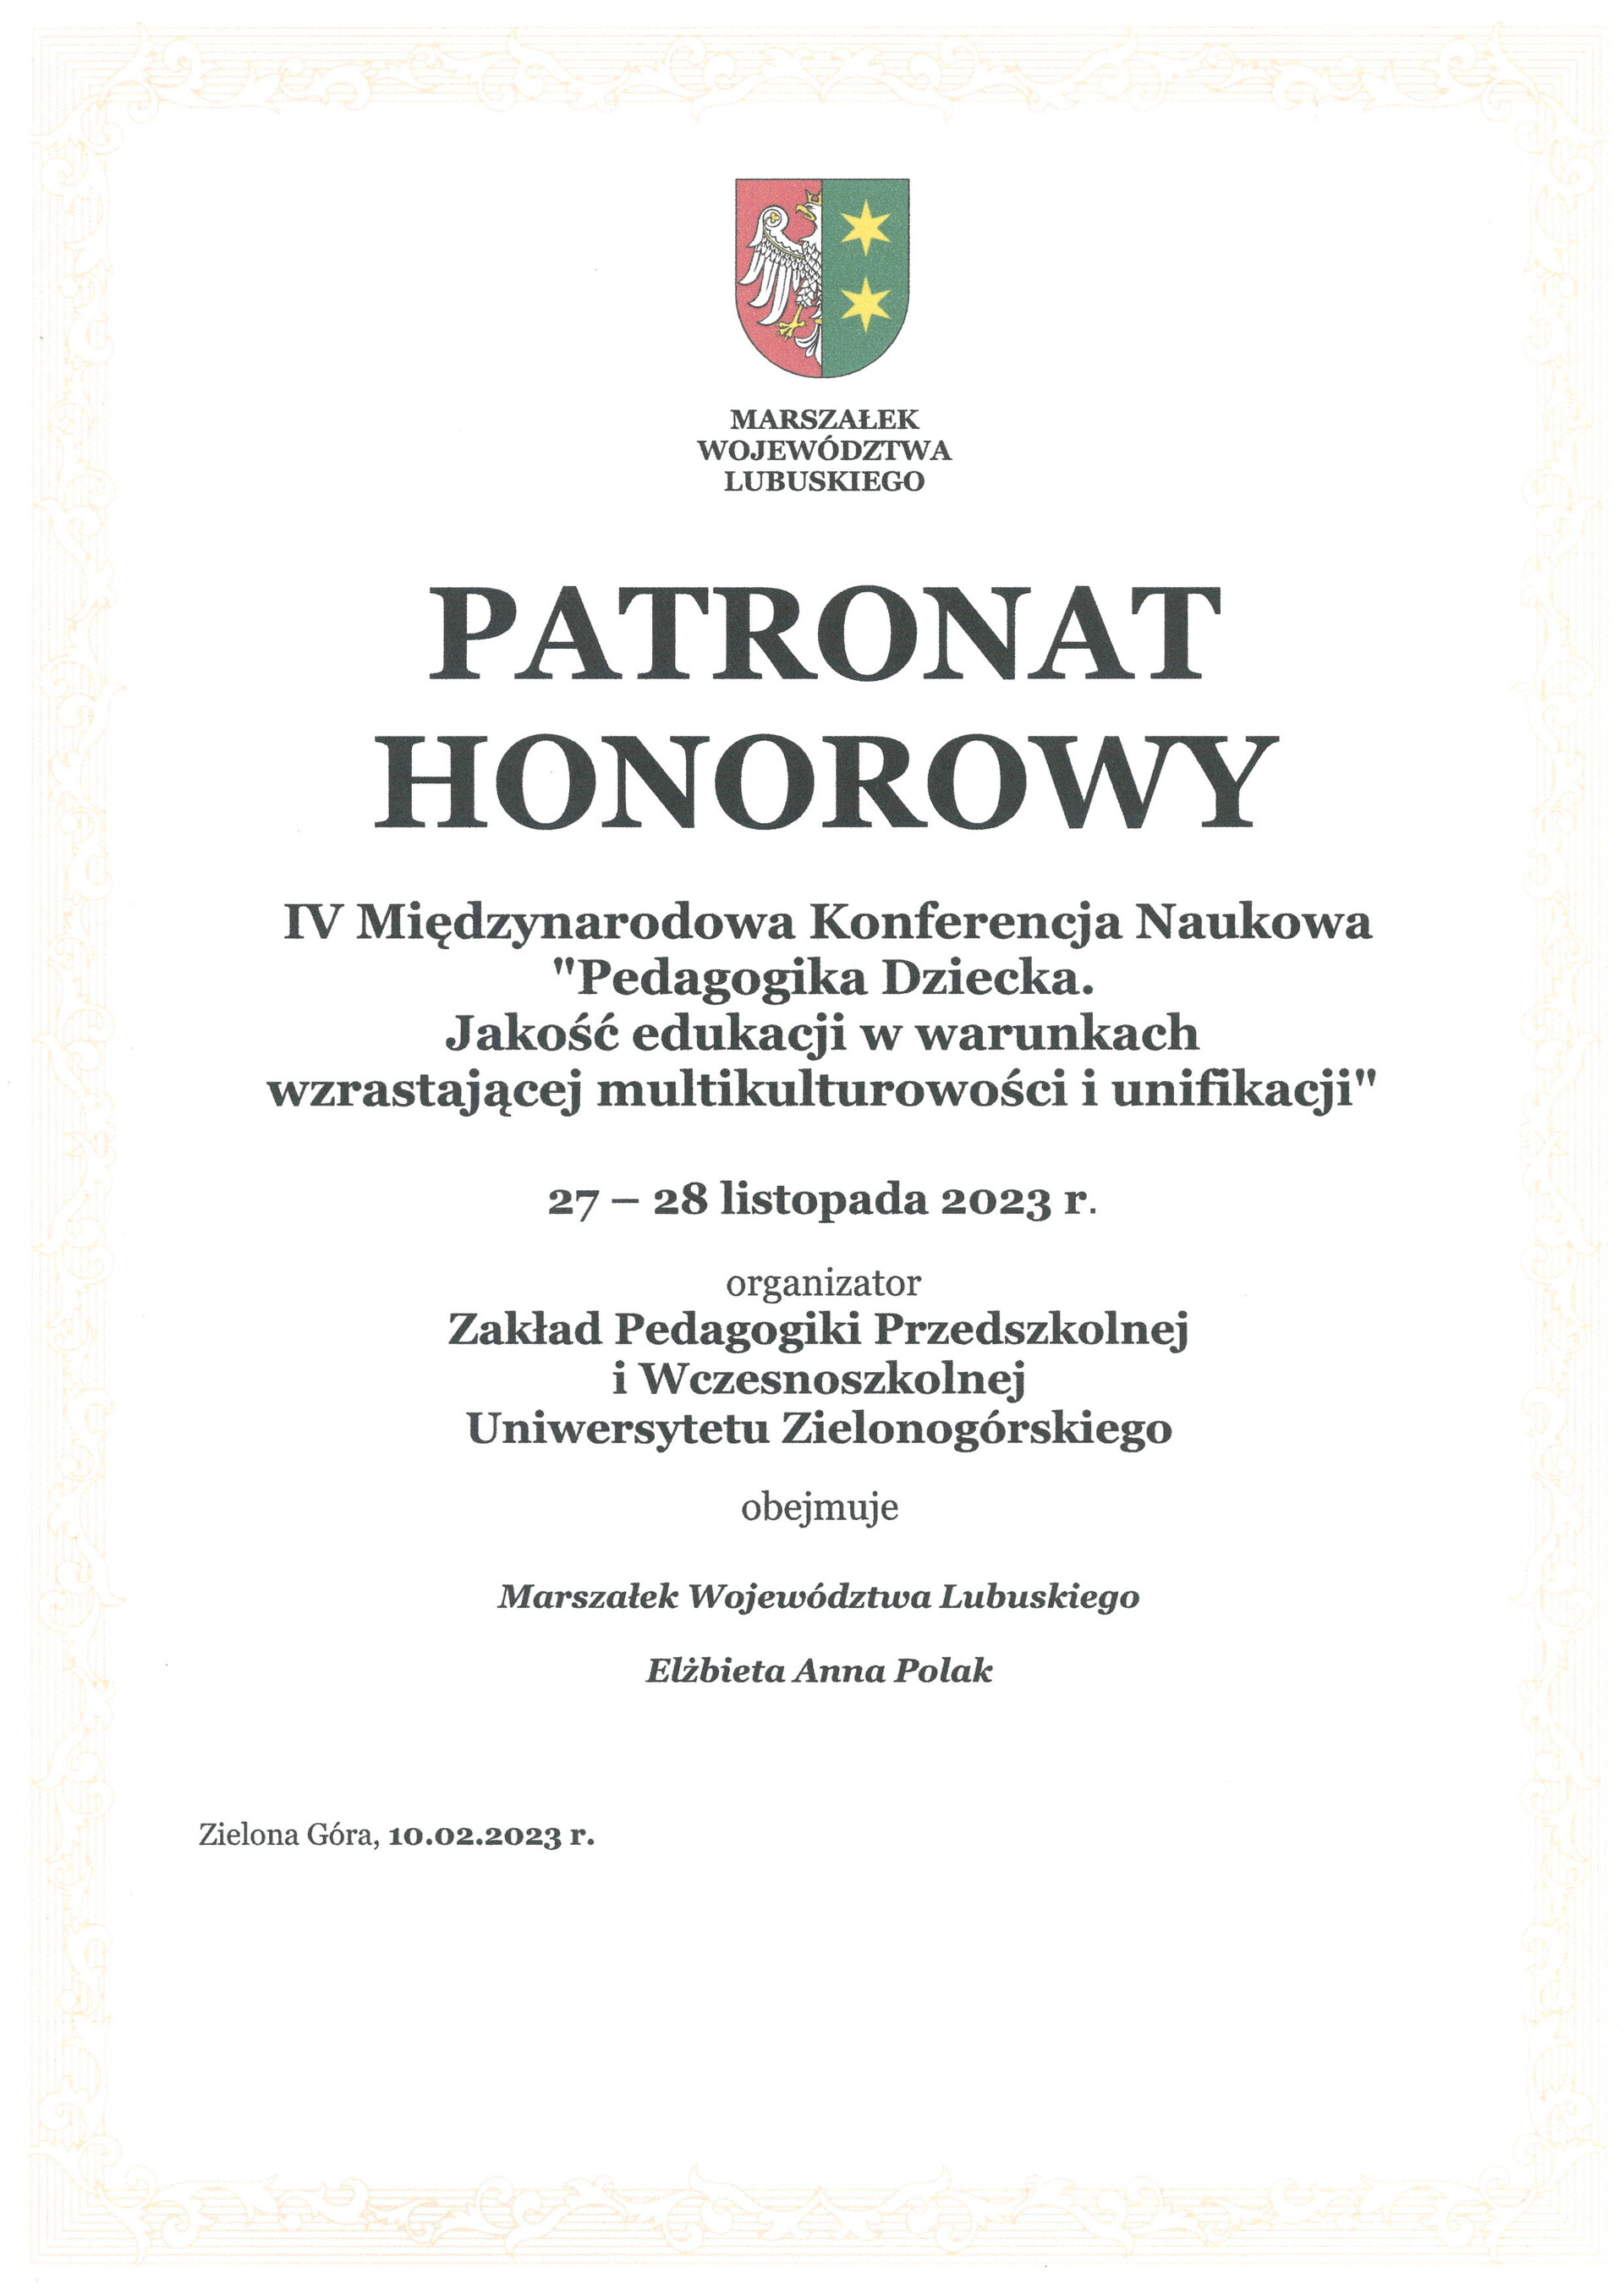 pedagogika_dziecka_-_patronat_-_marszalek_wojewodztwa_lubuskiego.jpg